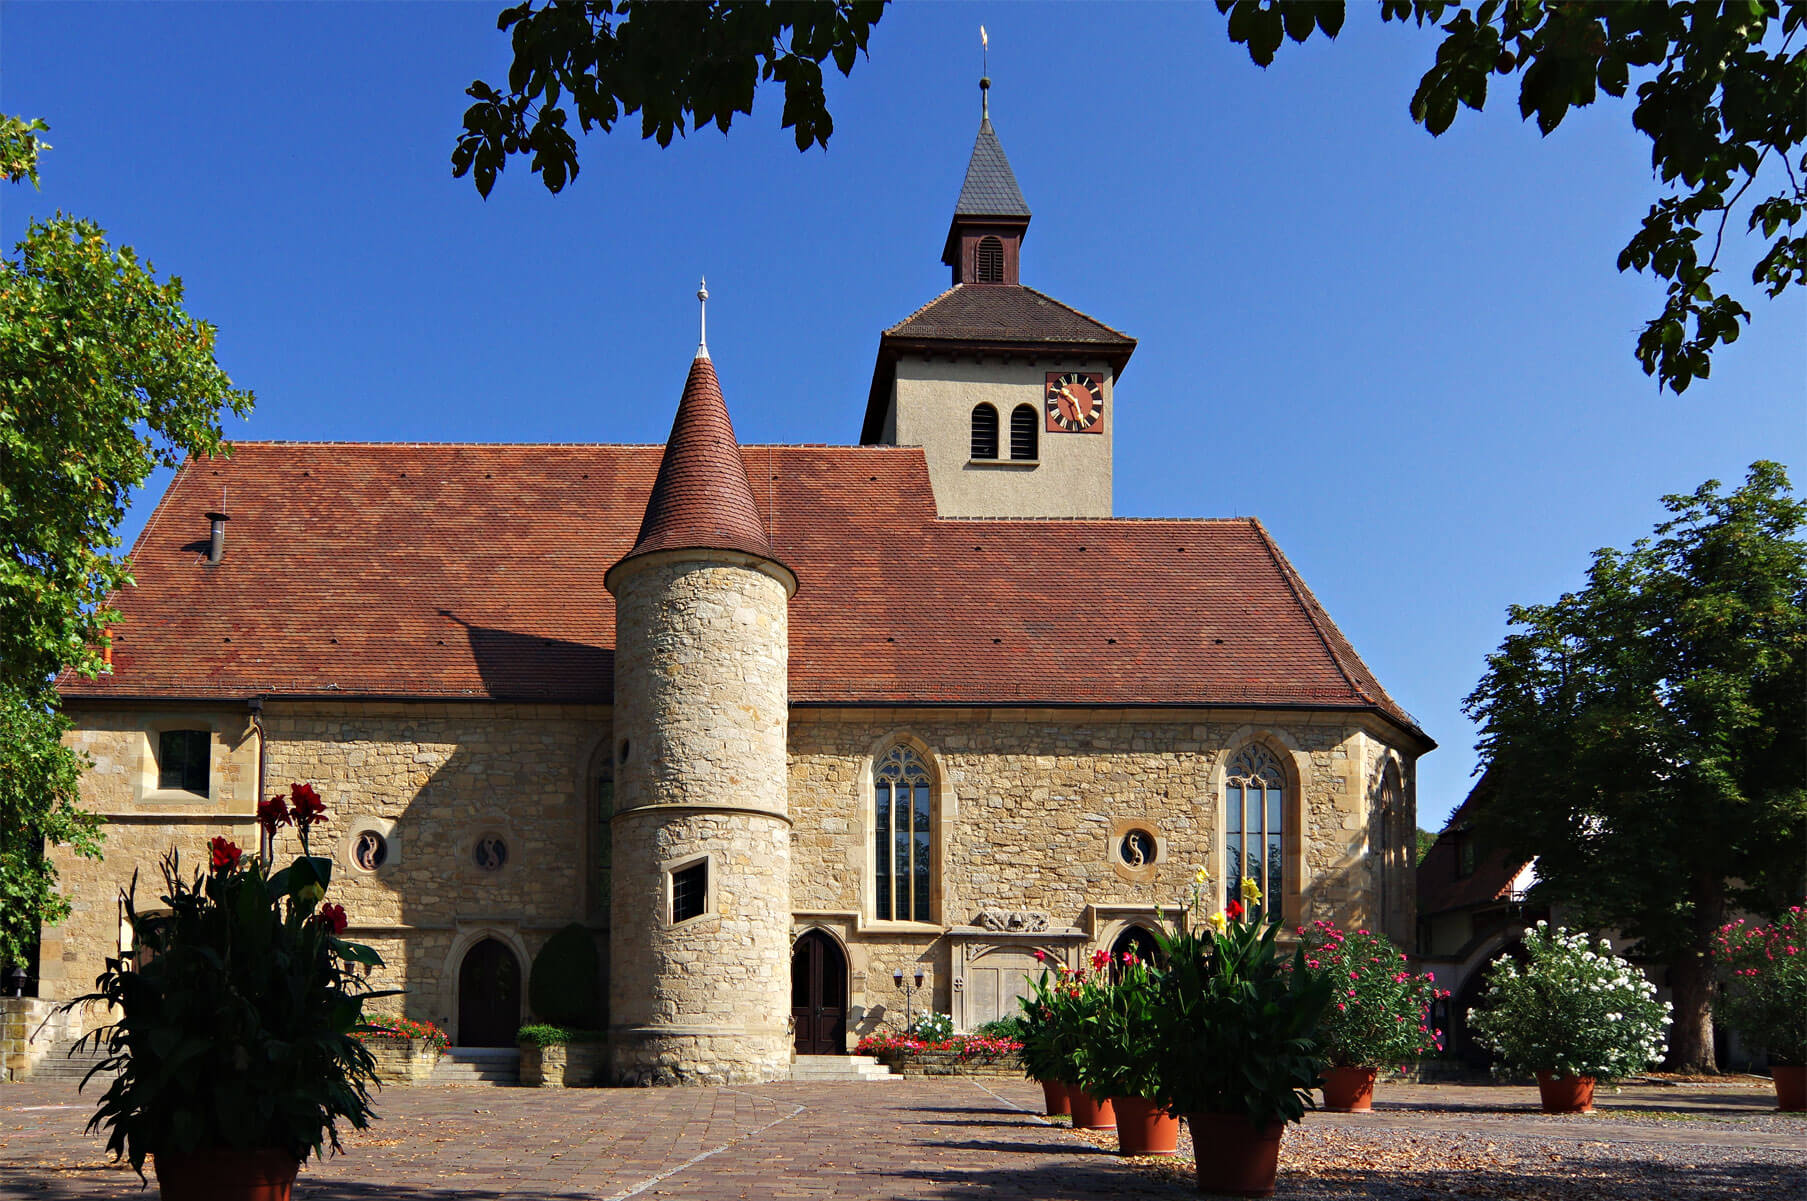 Michaelskirche in Asperg